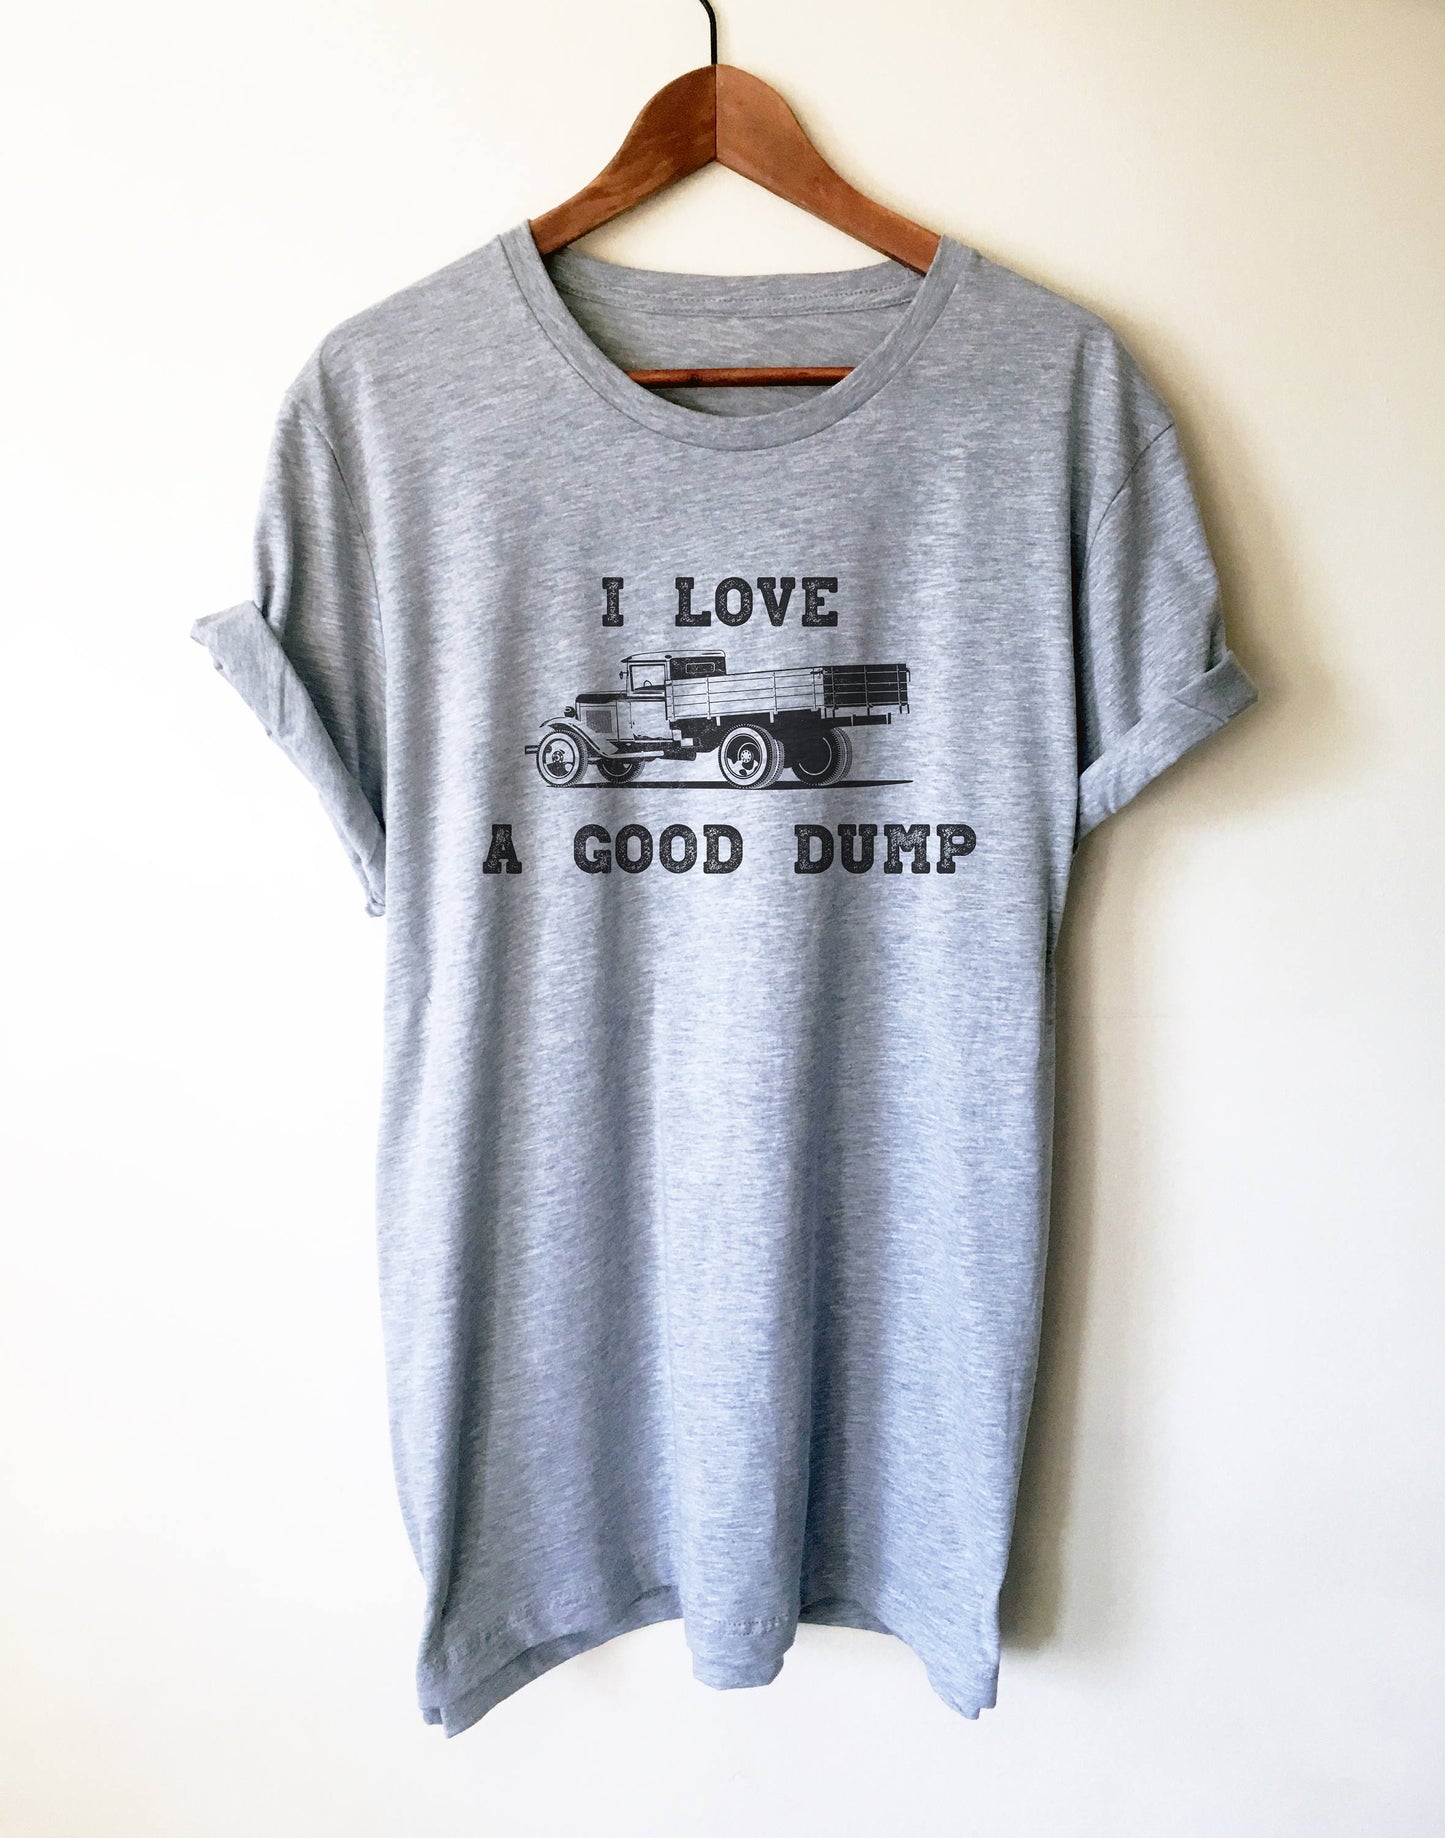 I Love A Good Dump Unisex Shirt - Truck Driver Shirt, Truck Driver Gifts, Truck Shirt, Construction Shirt, Garbage Truck Shirt